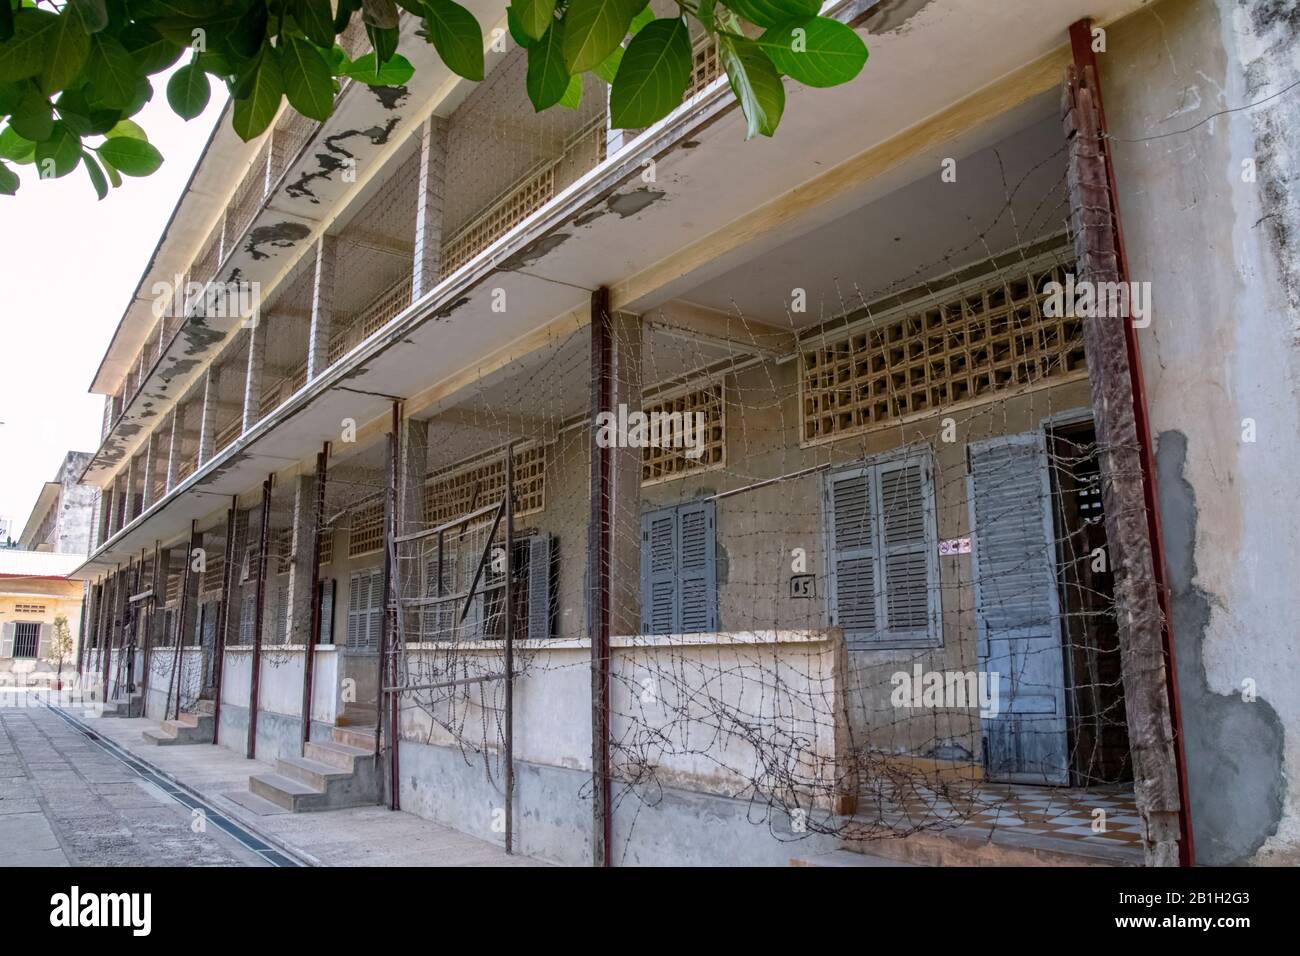 Cambodge, Phnom Phen - mars 2016 : ancienne école secondaire utilisée comme prison de sécurité 21 (S-21) par le régime des Khmers rouges Banque D'Images